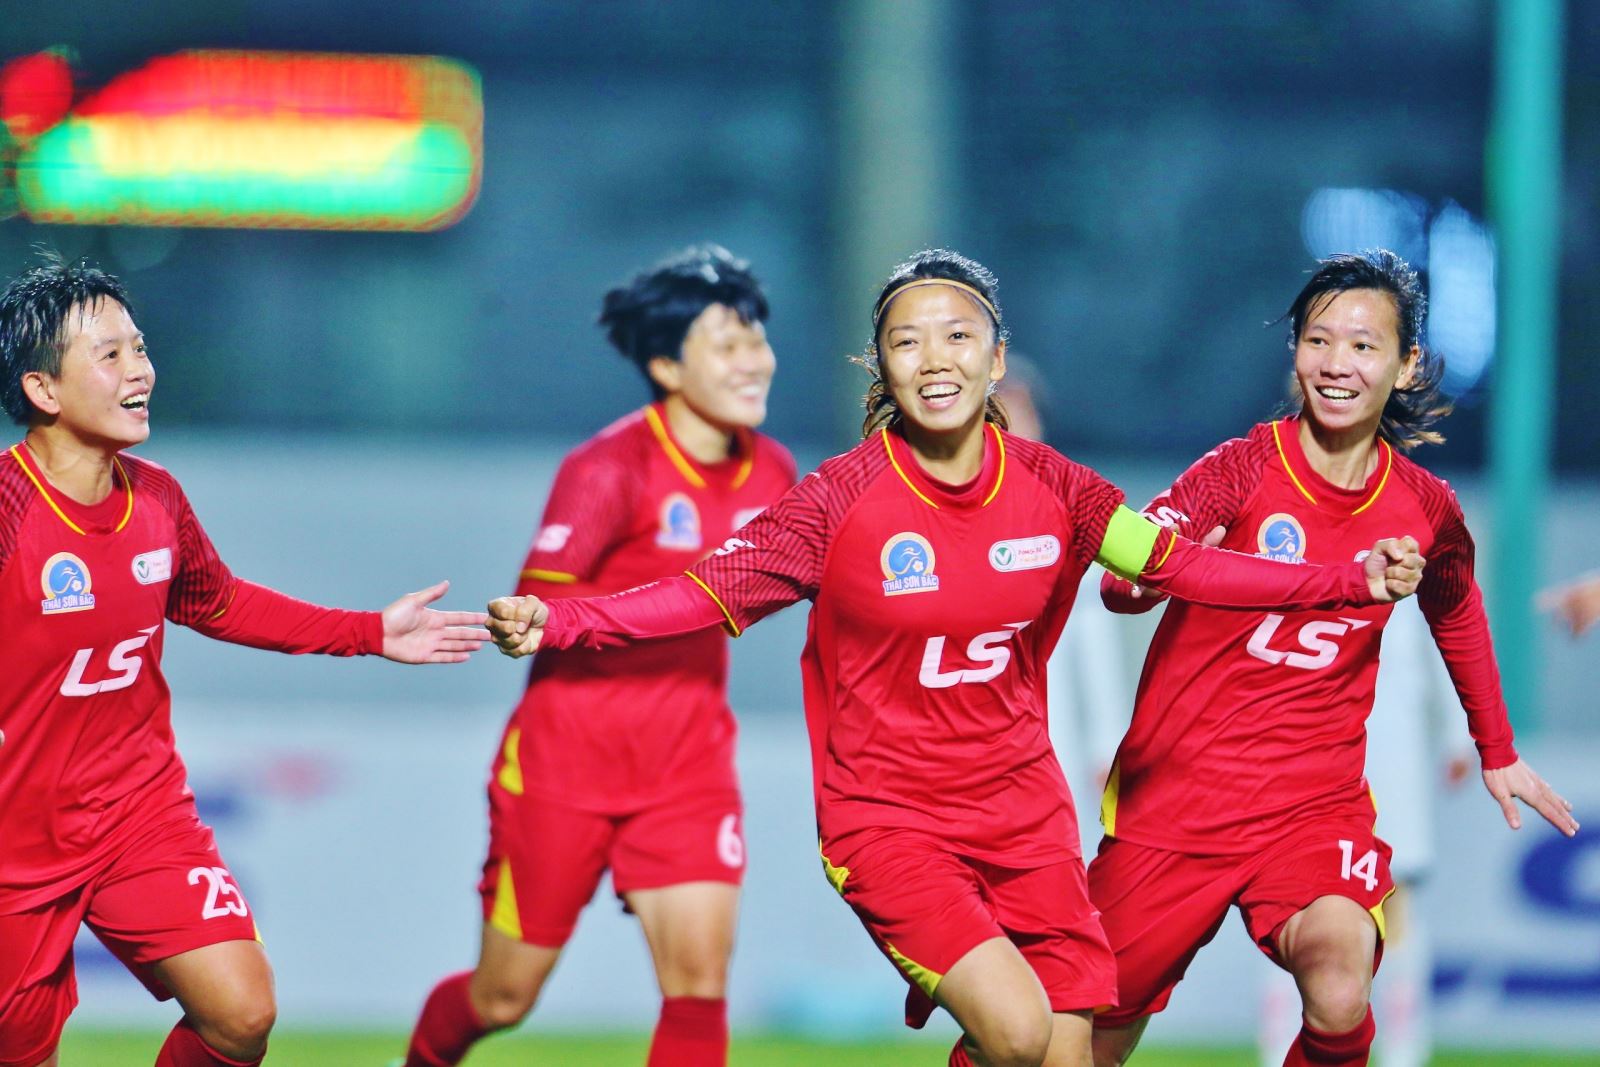 Đội tuyển bóng đá nữ Việt Nam đi vào lịch sử khi giành quyền tham dự Cúp bóng đá nữ thế giới FIFA World Cup 2023. Ảnh: VFF